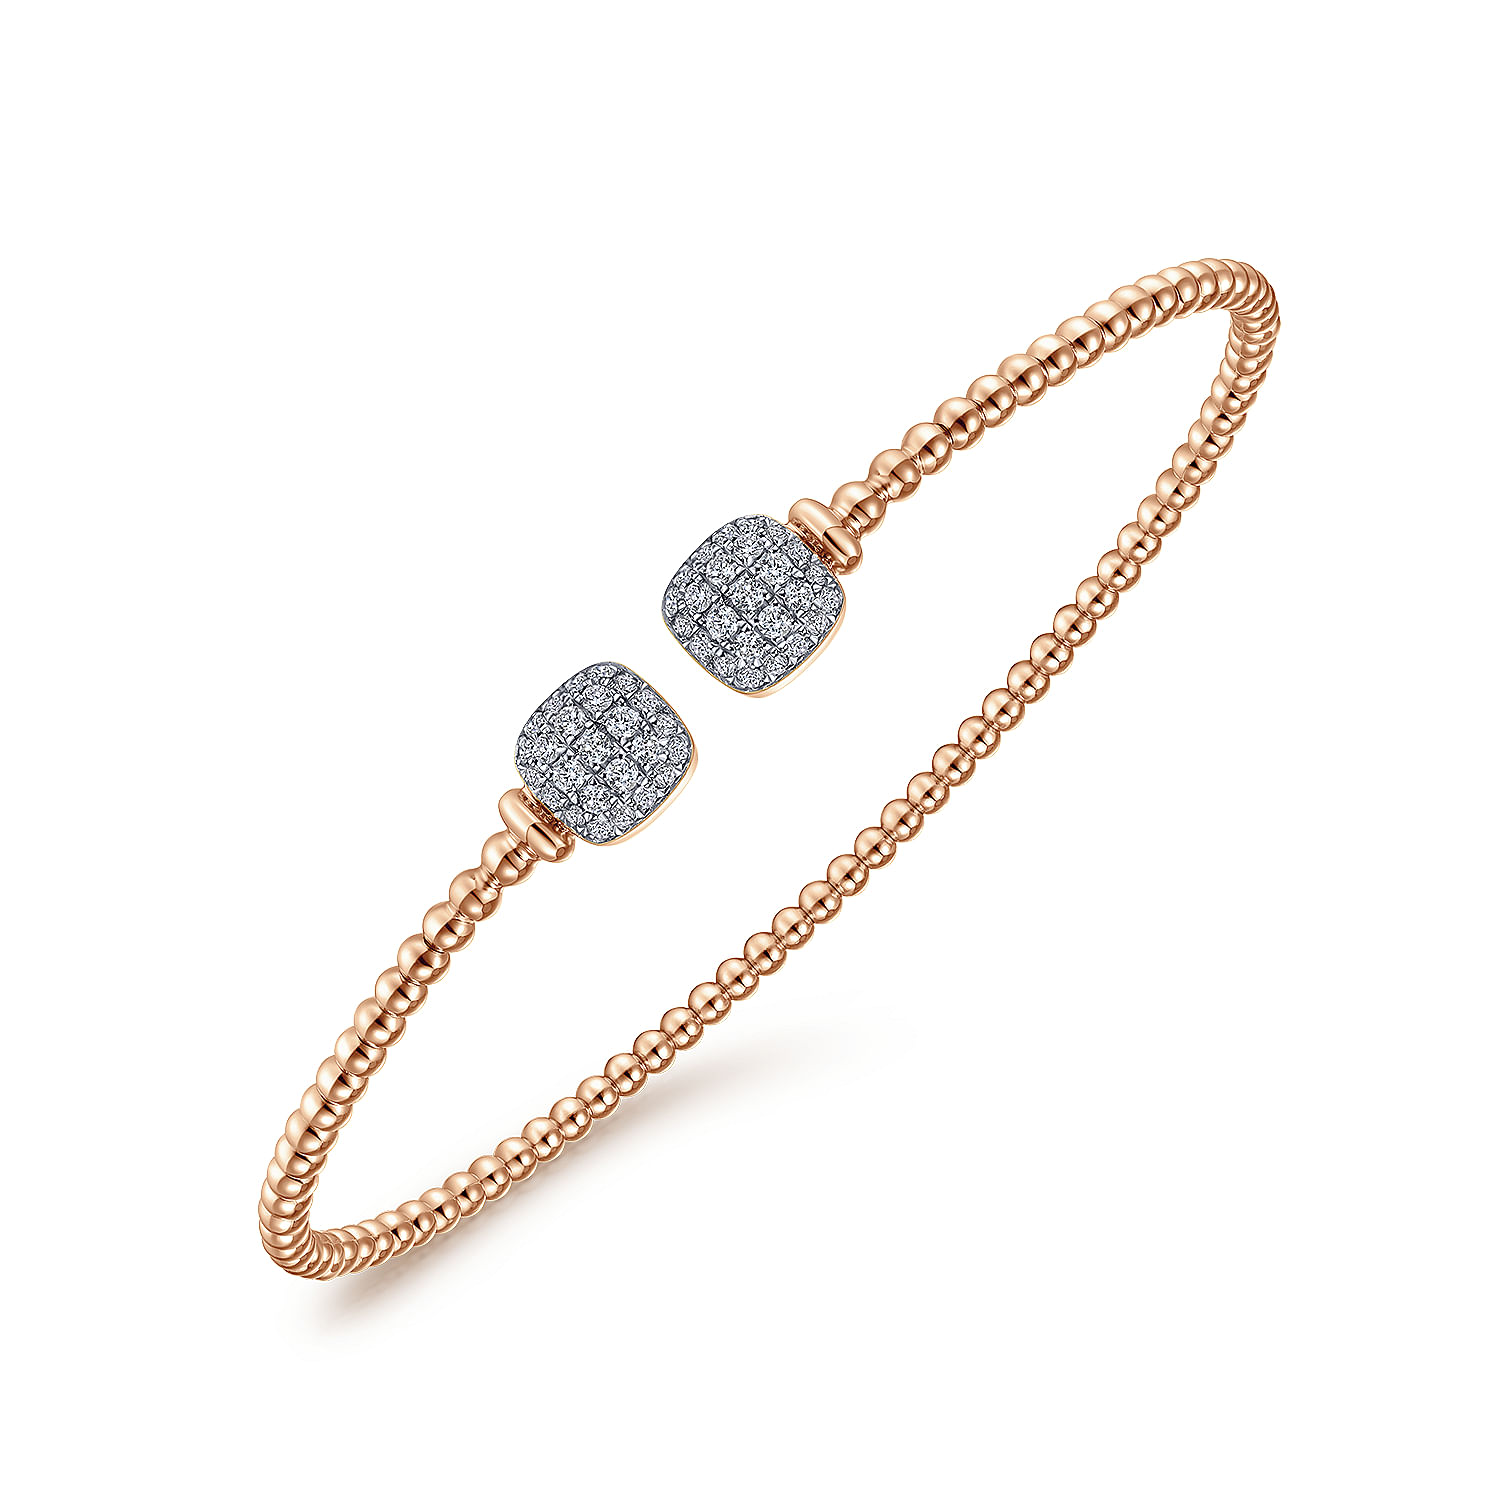 14K Rose Gold Bujukan Split Cuff Bracelet with Pav¿ª Diamond Squares